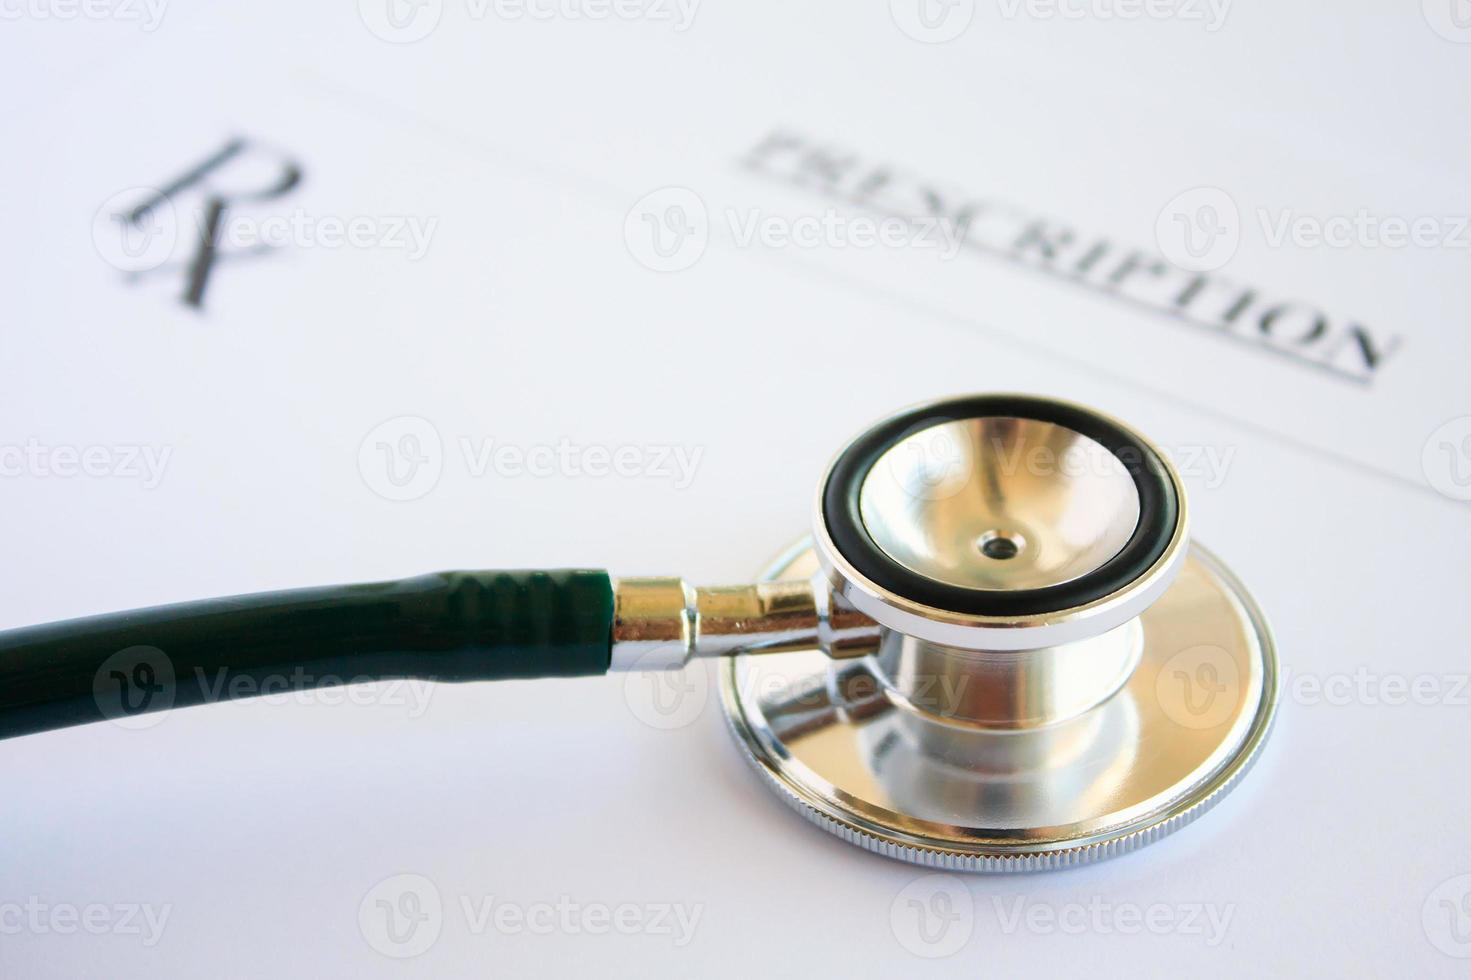 prescrição médica em branco com estetoscópio foto